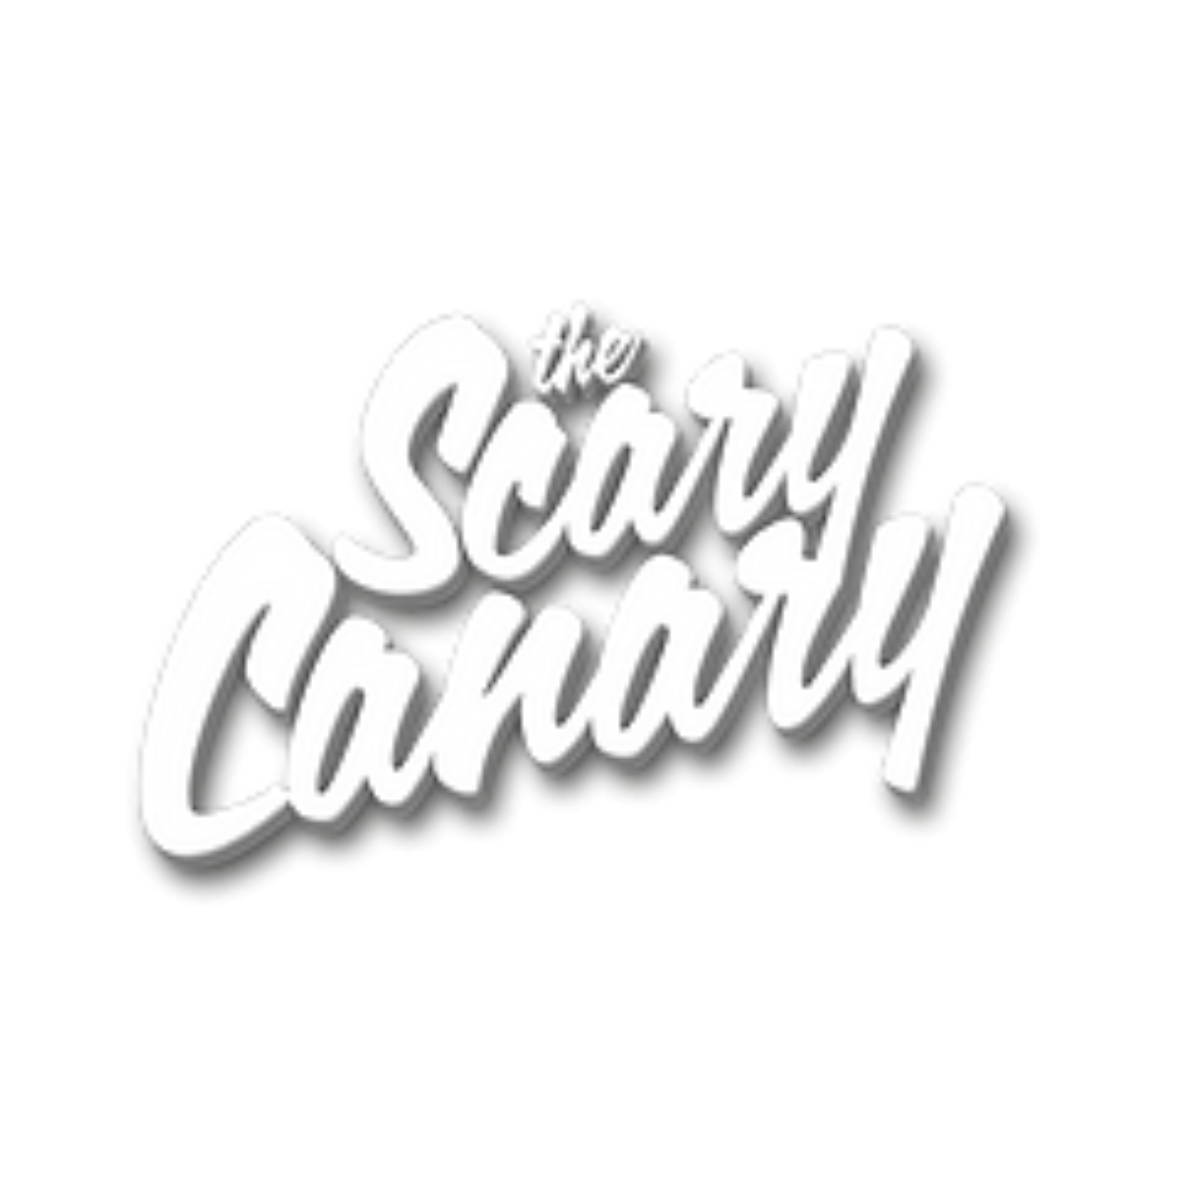 Scary Canary logo